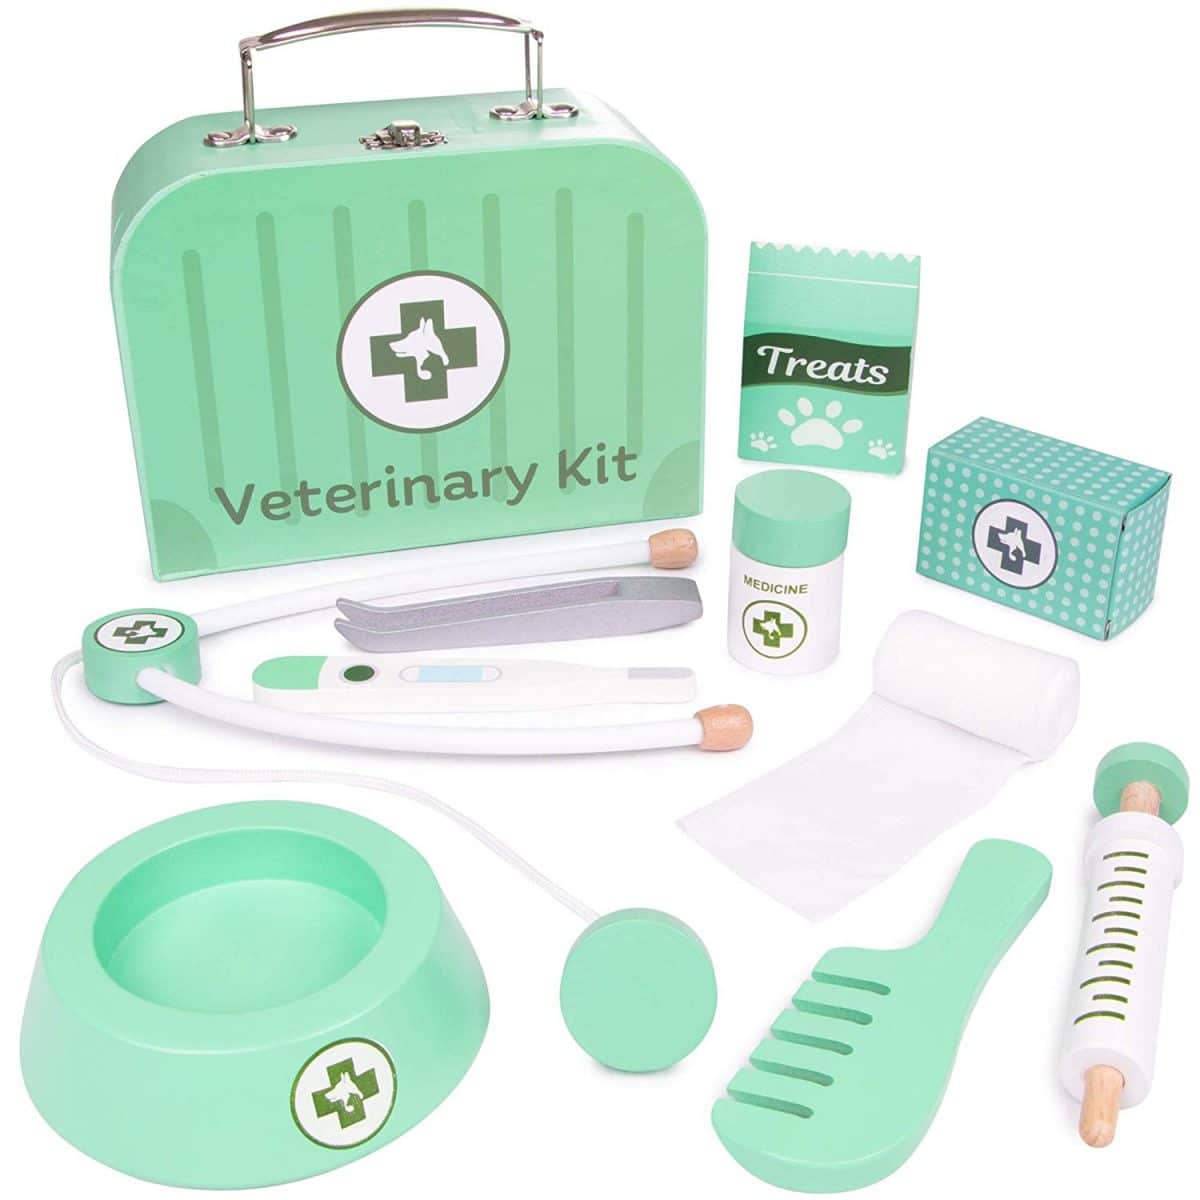 vet kit for 10 year old